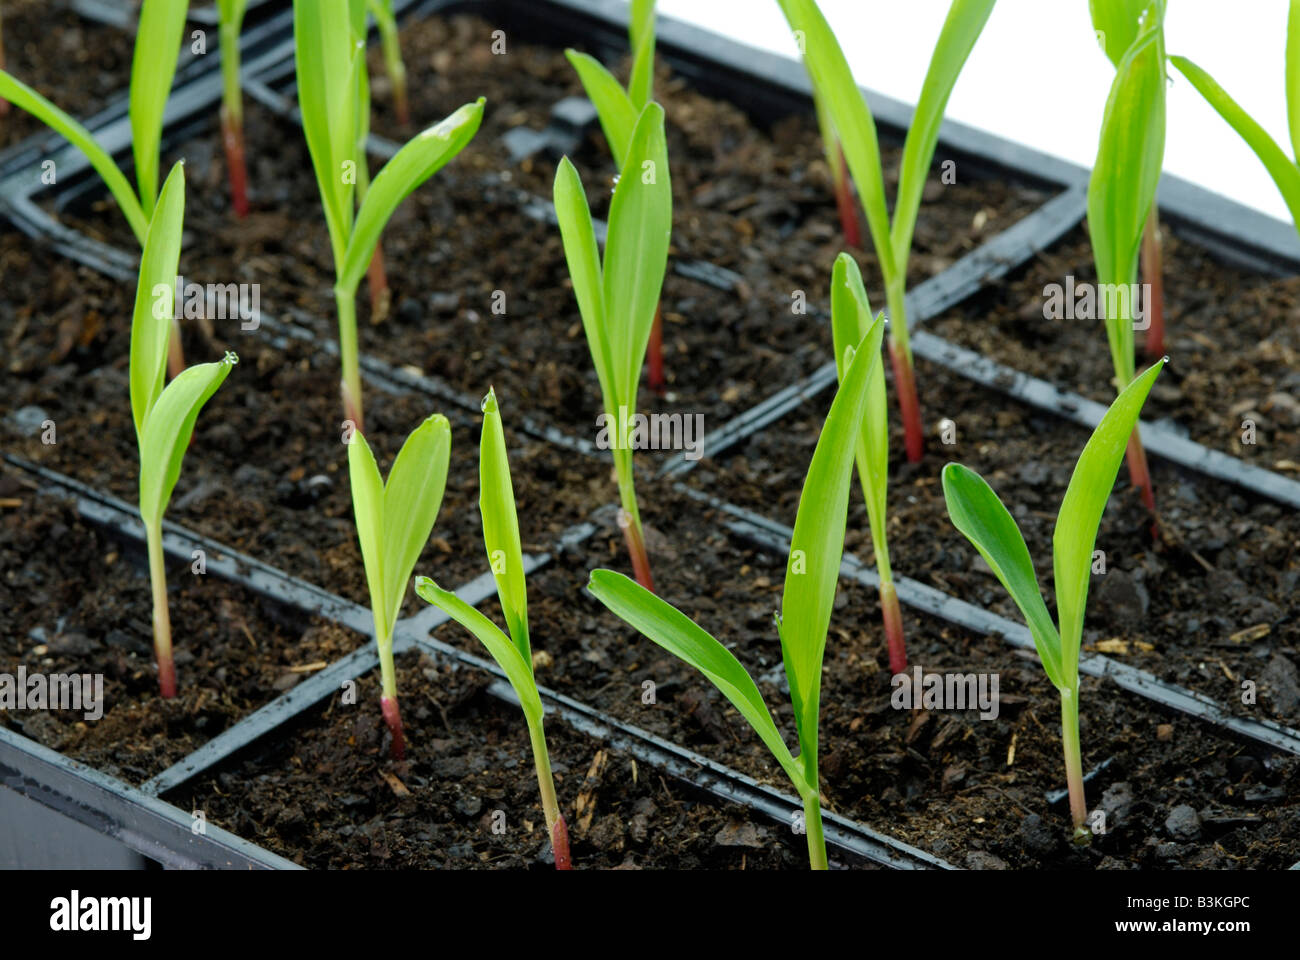 Maíz Zea mays plántulas en pisos son las plantas 1-2 semanas de edad Foto de stock